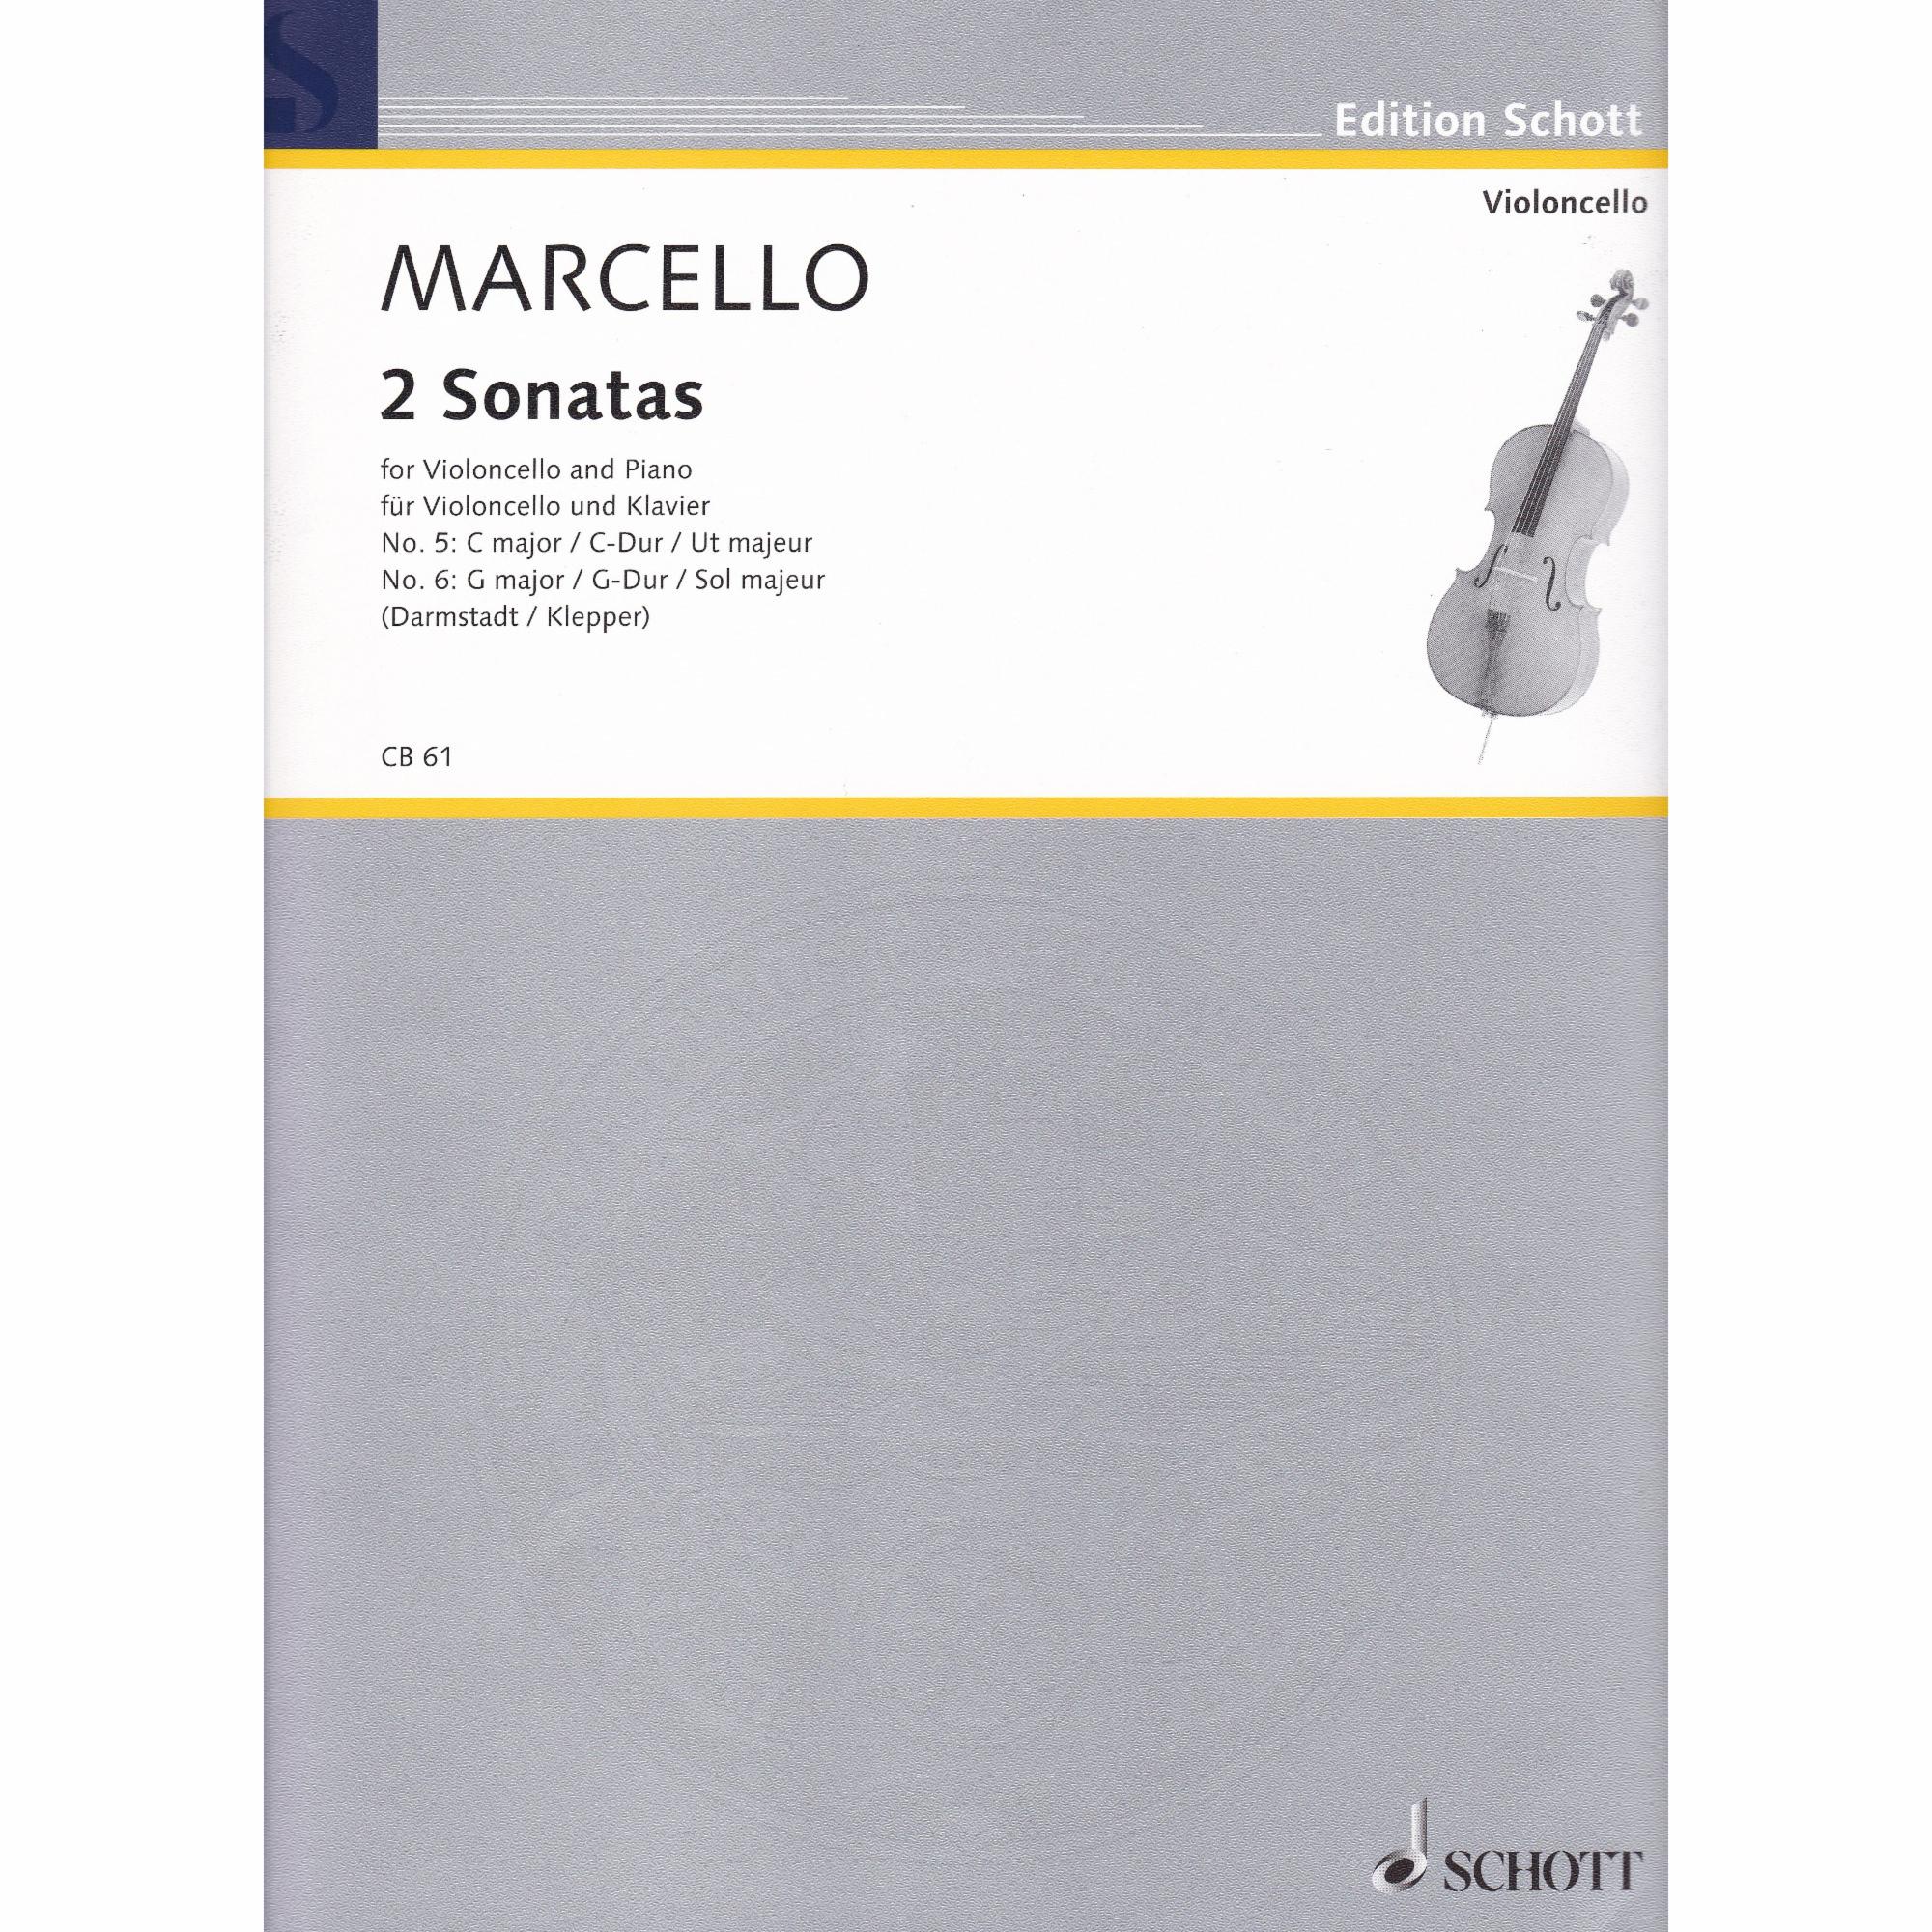 Two Sonatas for Cello and Piano